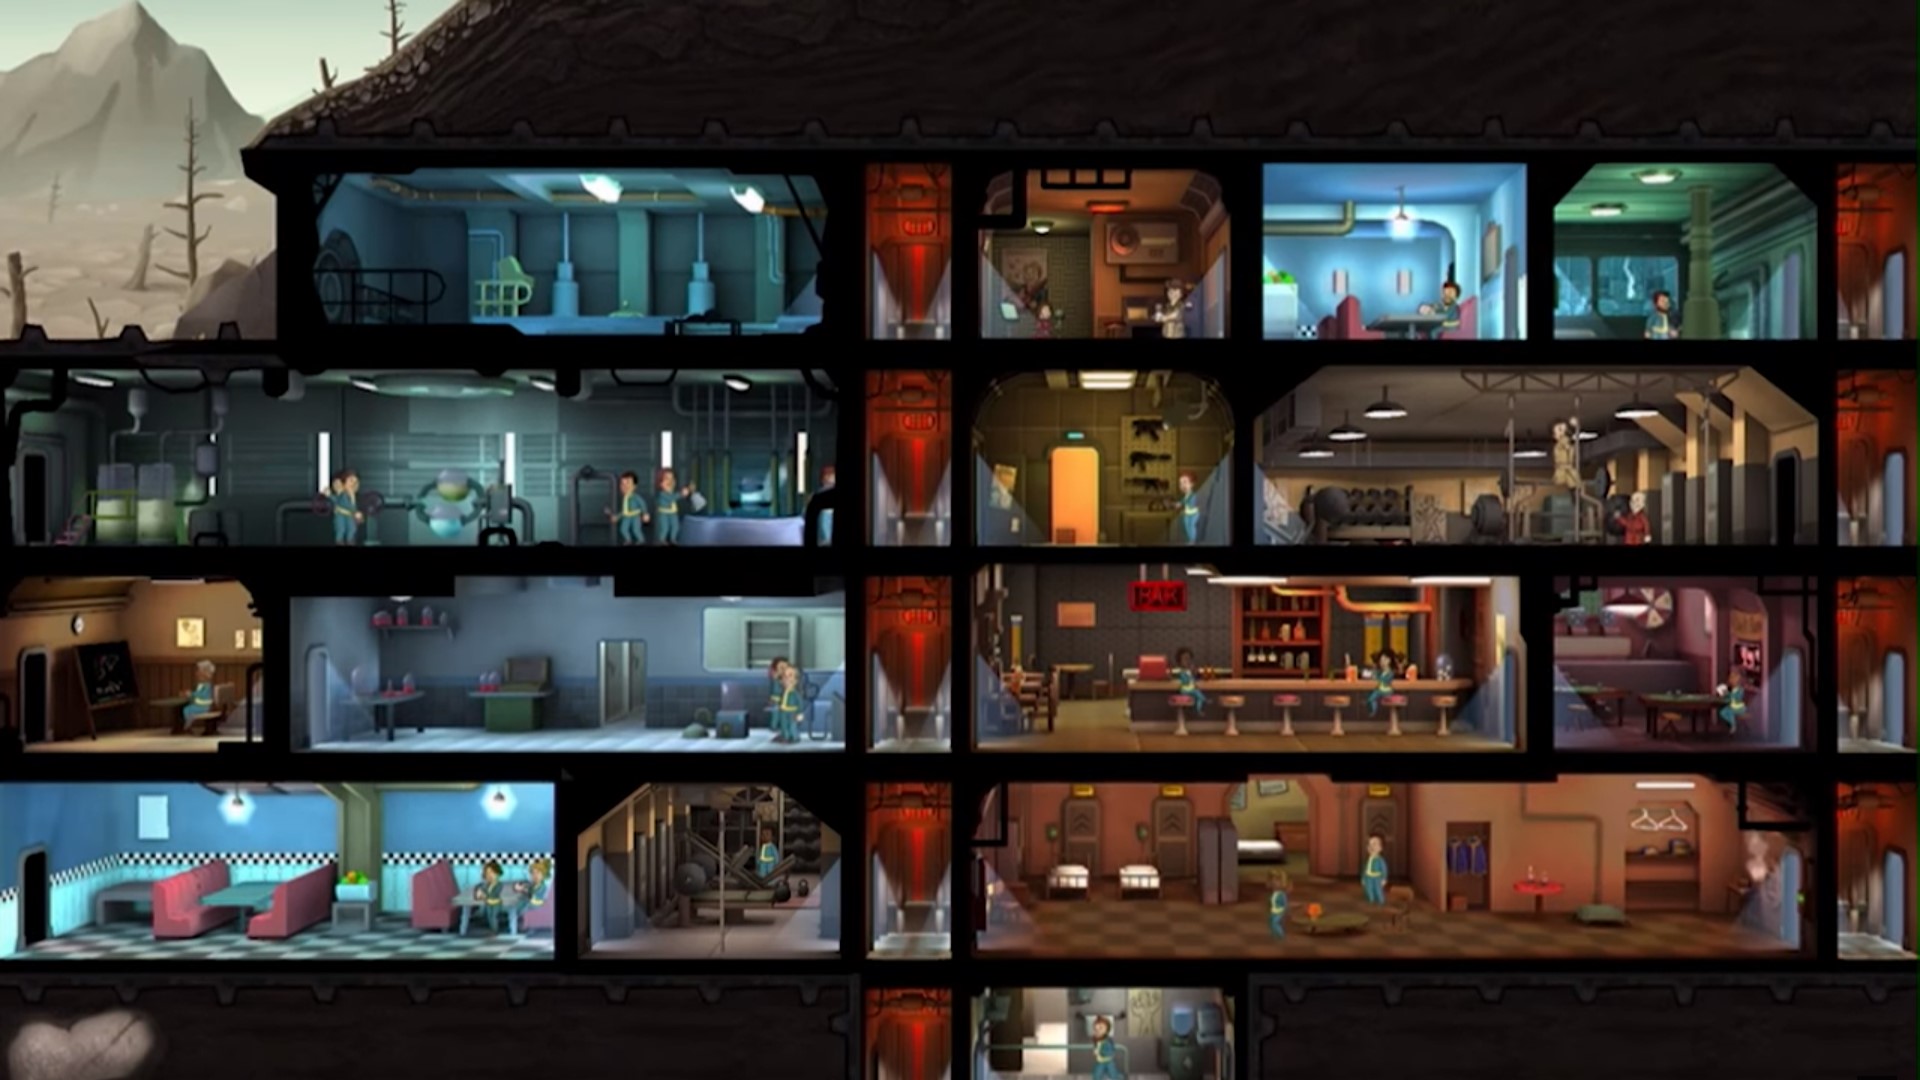 Los mejores juegos de estrategia móvil: refugio de Fallout. La imagen muestra un refugio de Fallout con muchas habitaciones y personas dentro de él